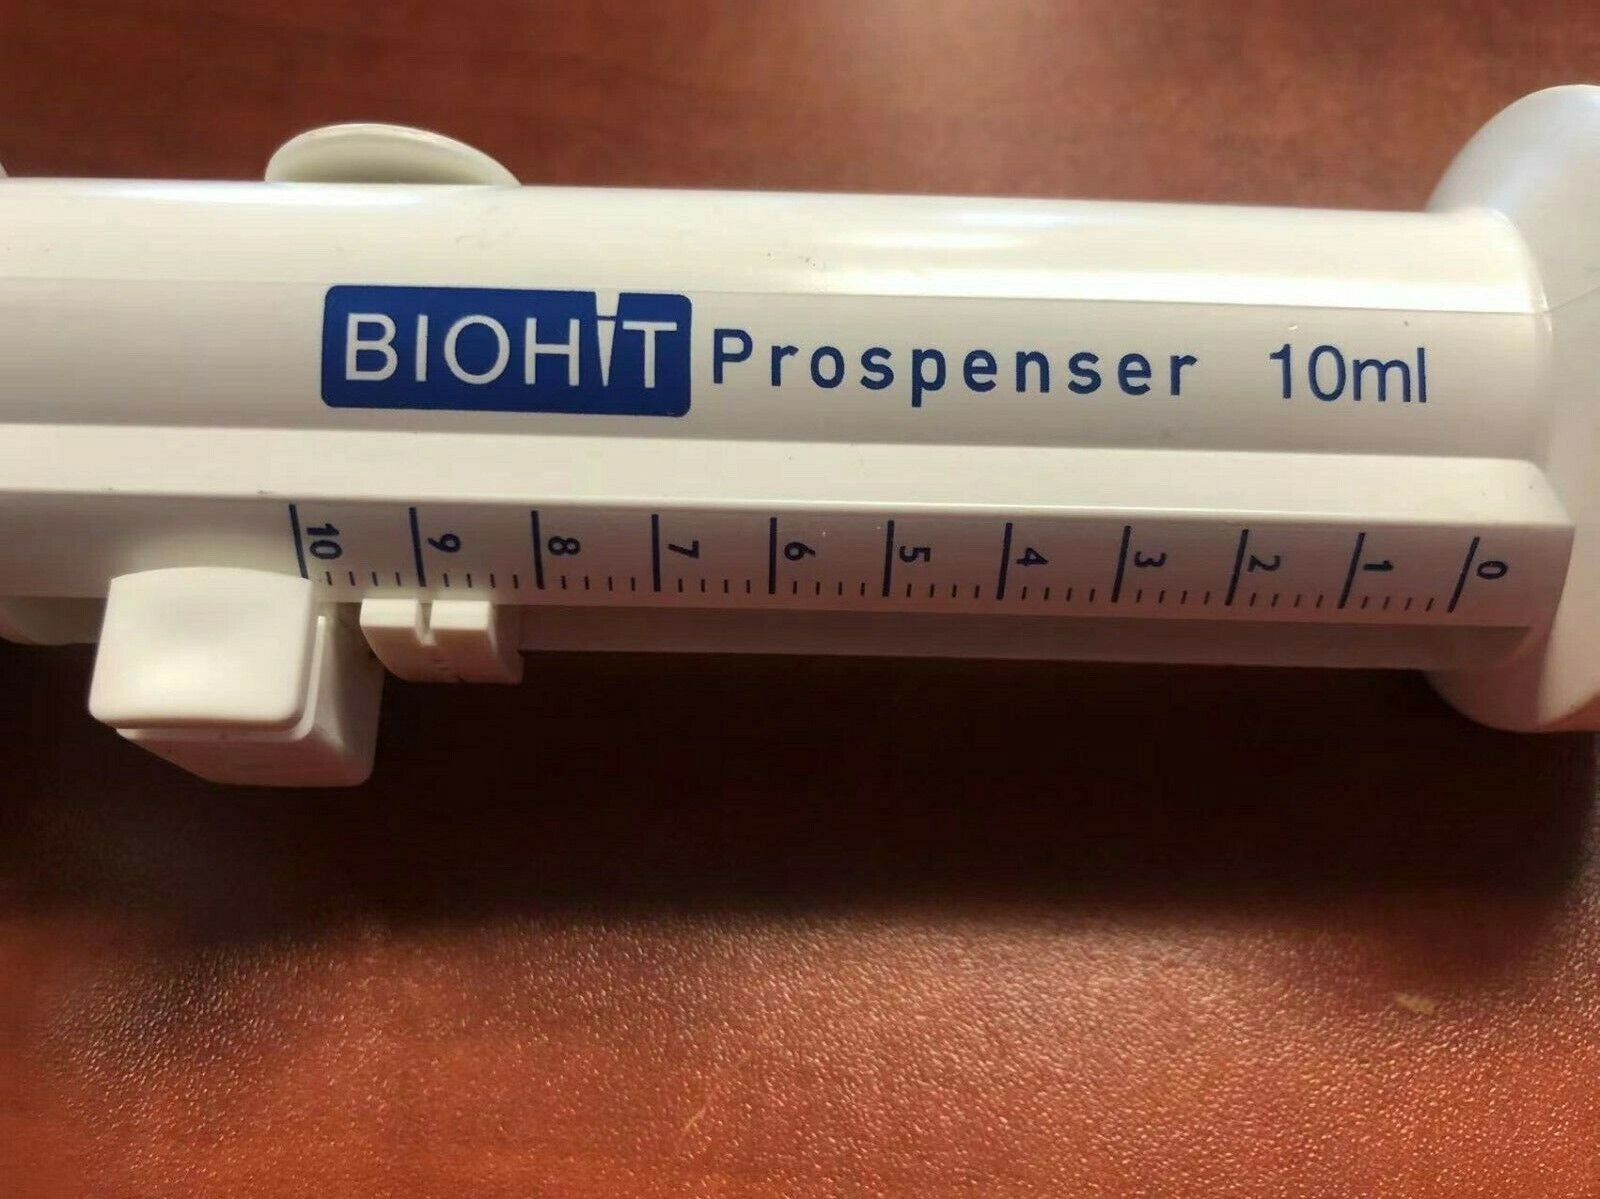 Sartorius Biohit Prospenser Bottle-Top Dispenser 1